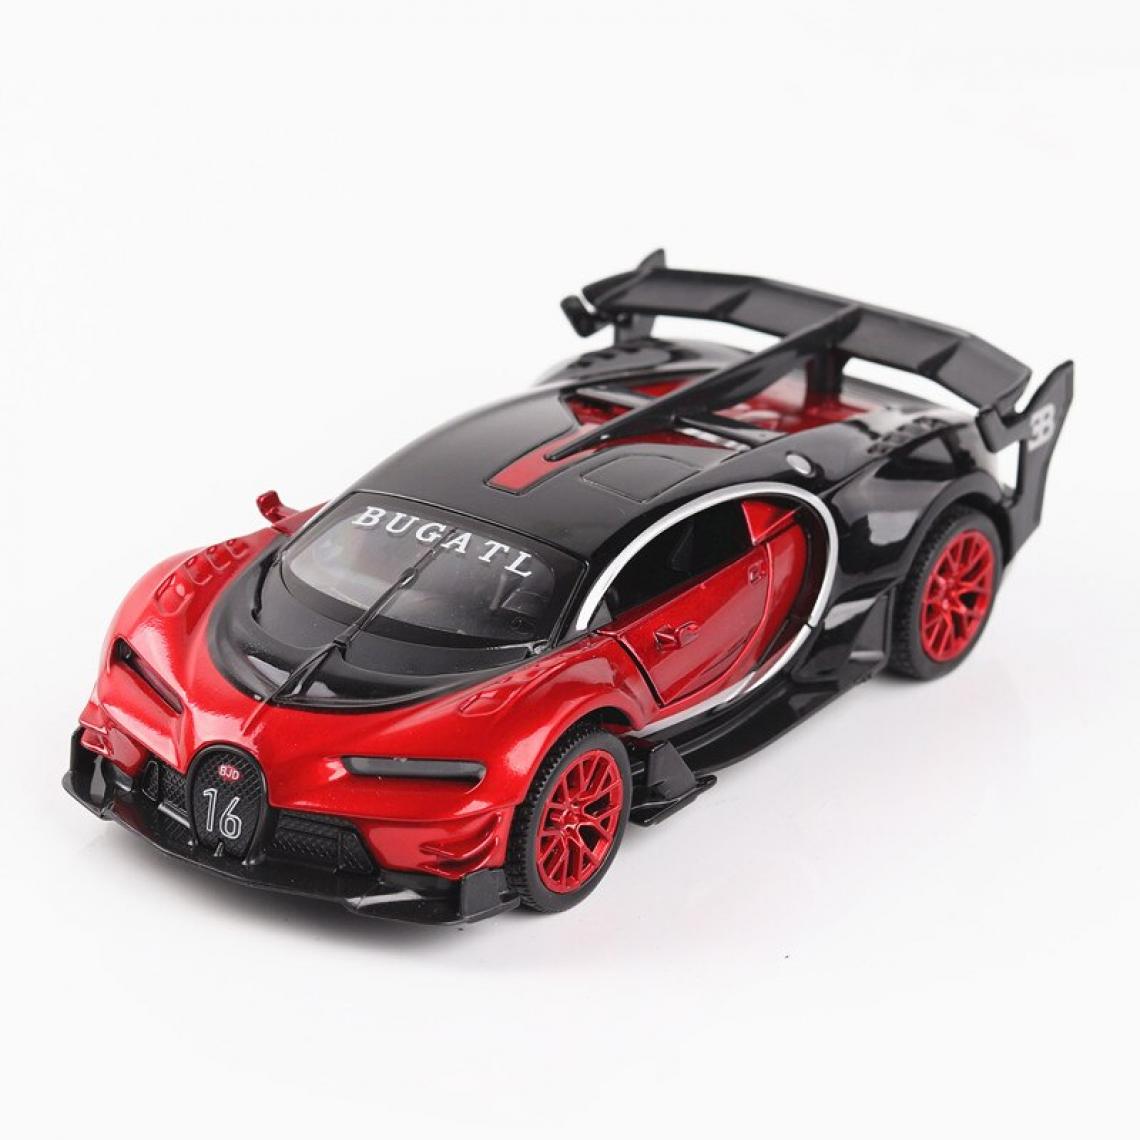 Universal - 1: 32 Voiture jouet Bugatti GT Jouet en métal Voiture en alliage Jouet moulé sous pression Modèle de voiture Modèle de miniature Voiture Jouet Jouet pour enfants(Rouge) - Voitures